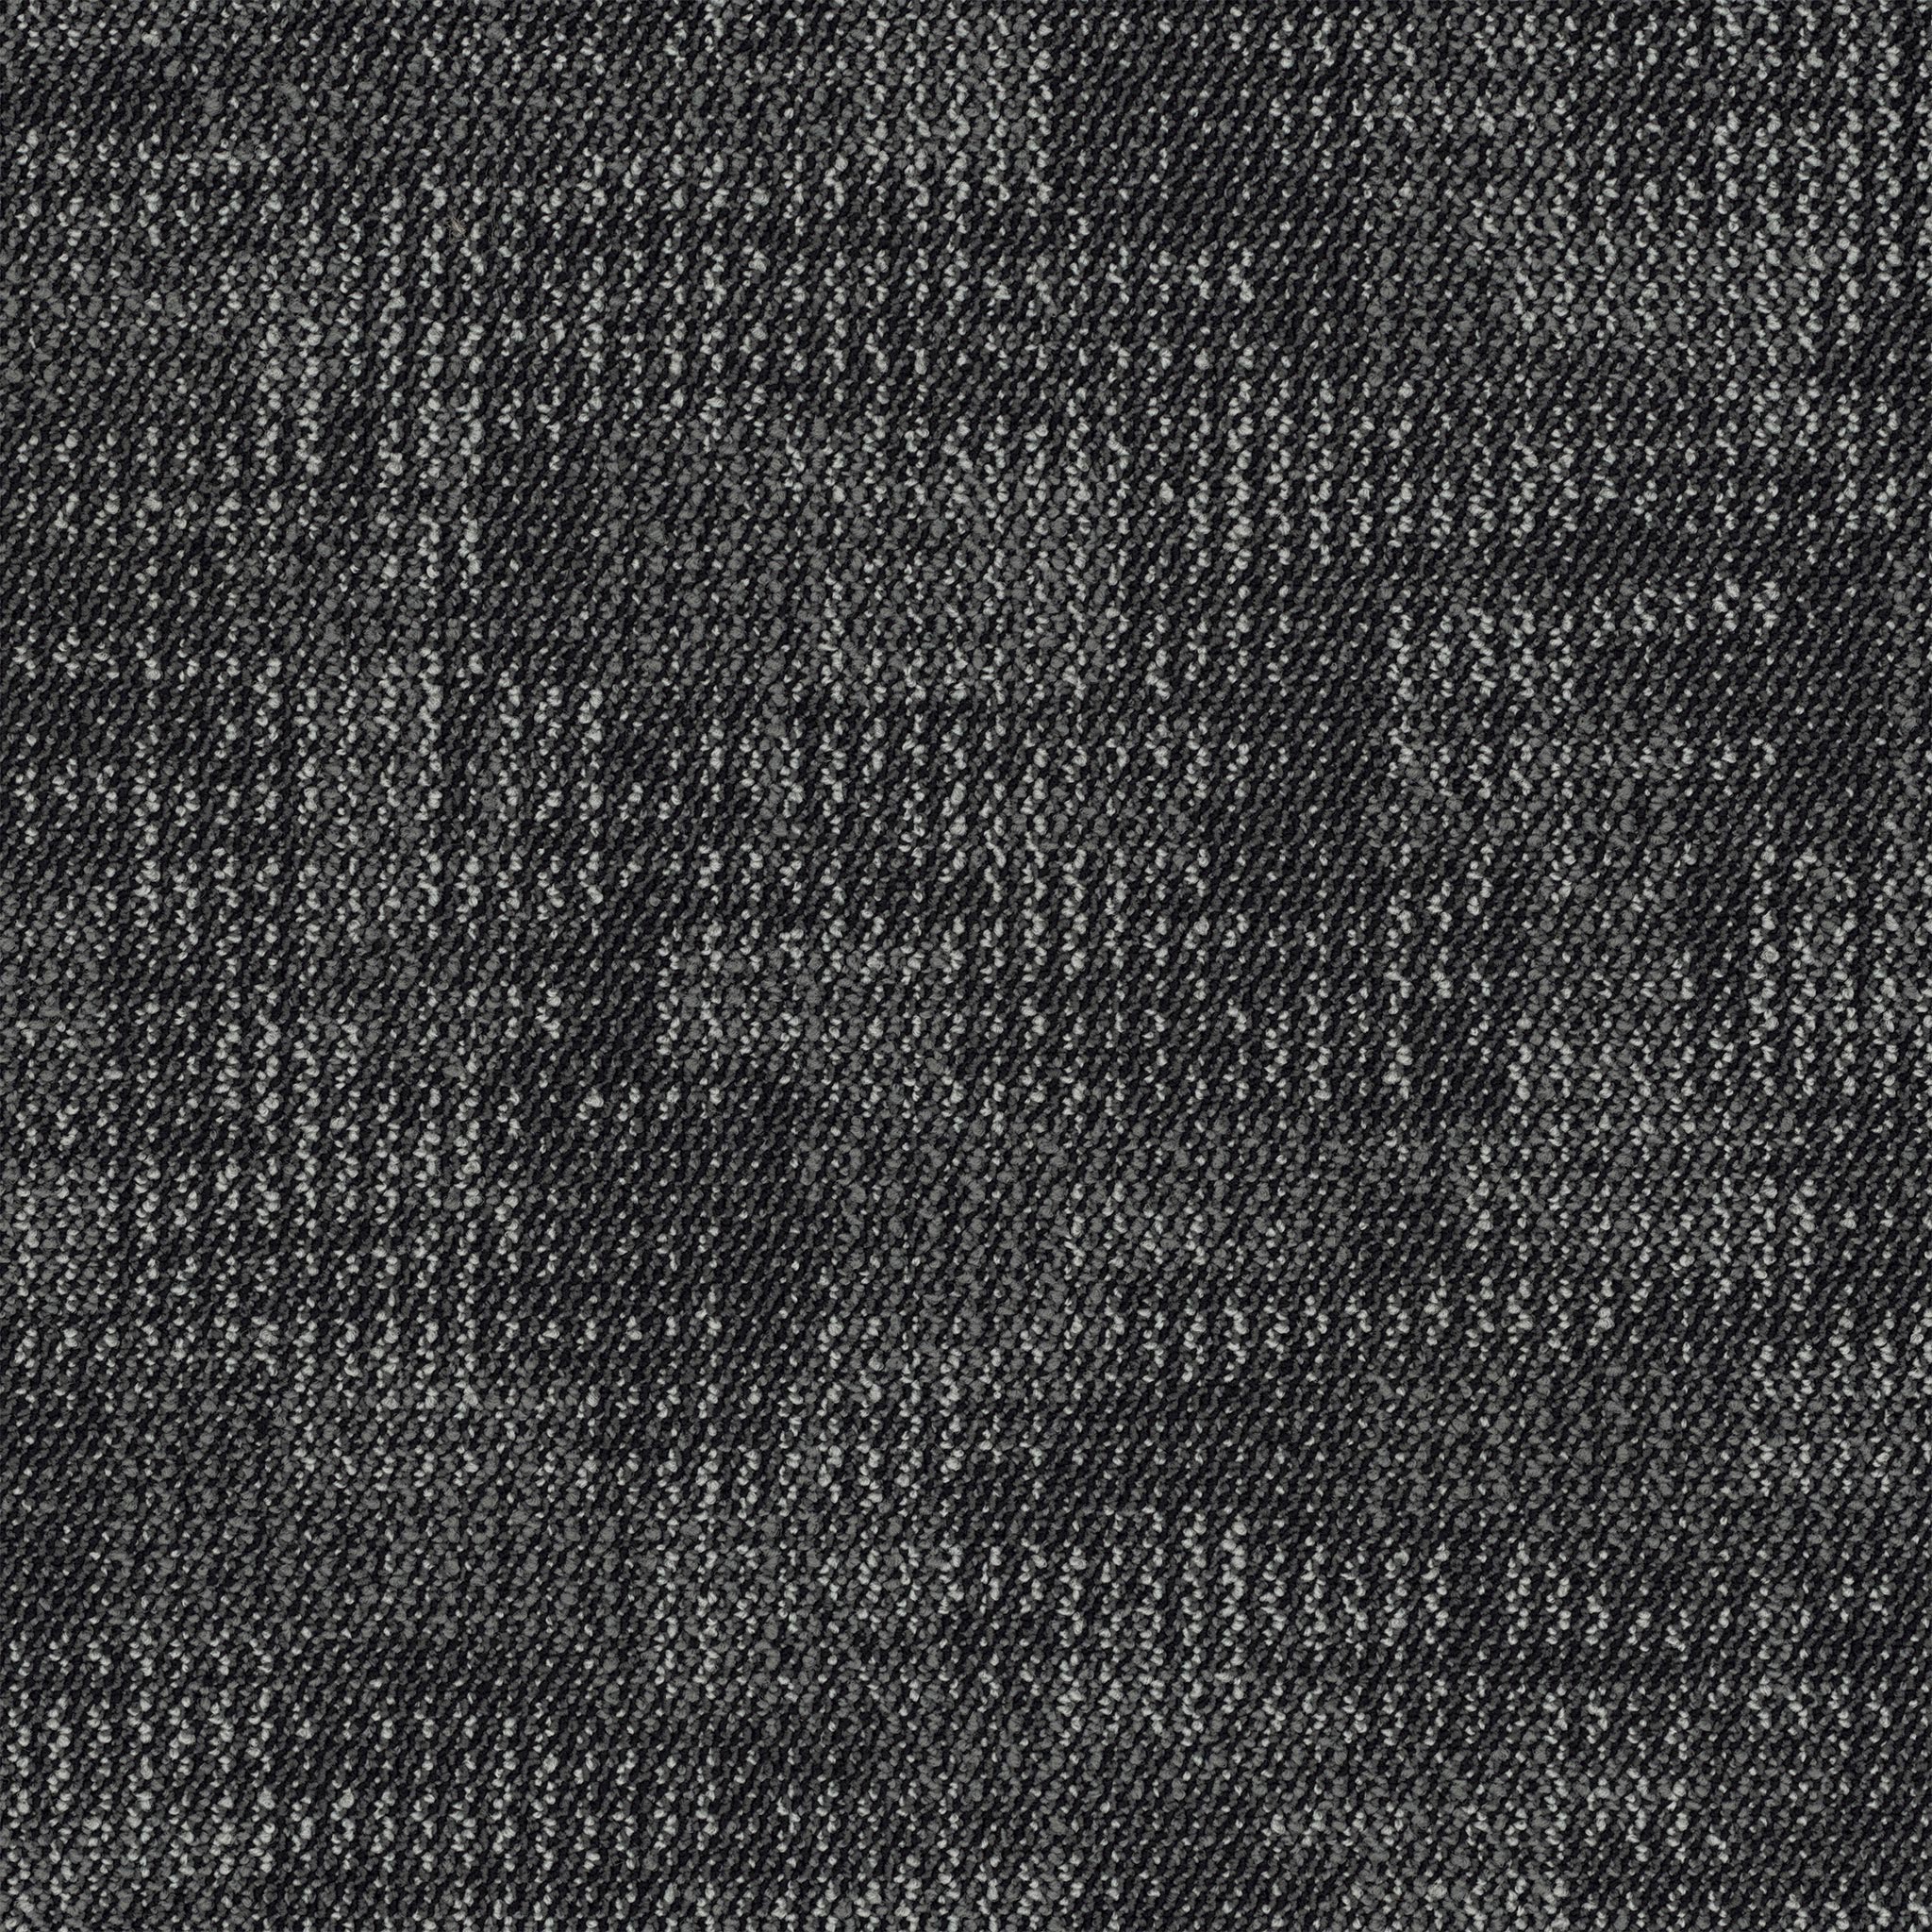 Interweave Carpet Tiles - Checker Patterned Modular Tiles